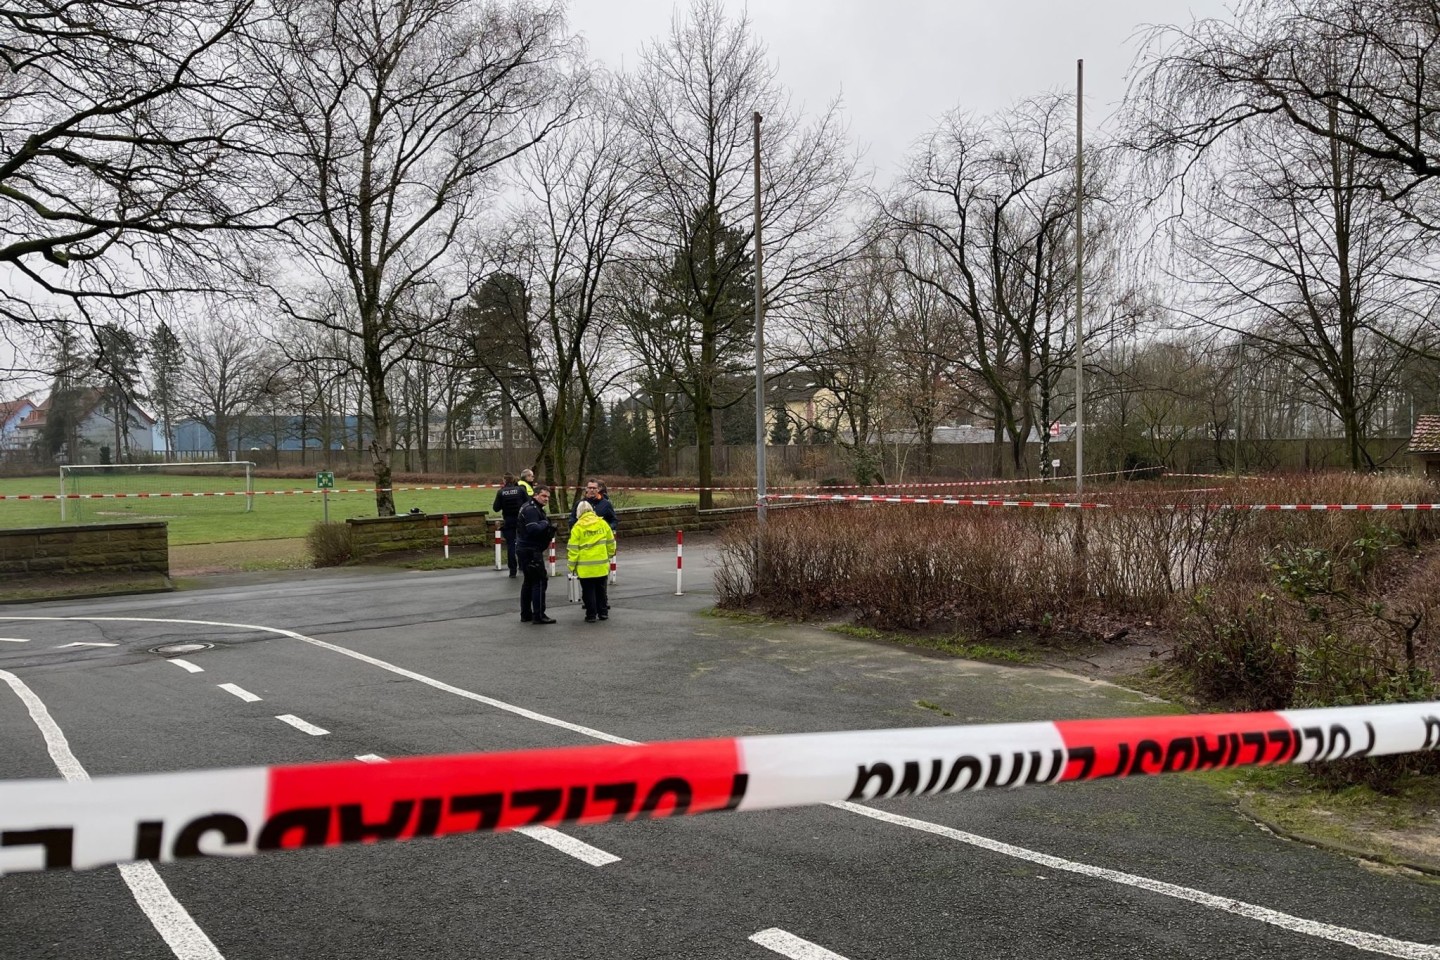 Polizeiabsperrung am Fundort eines Neugeborenen unweit eines Schulgeländes in Bielefeld.